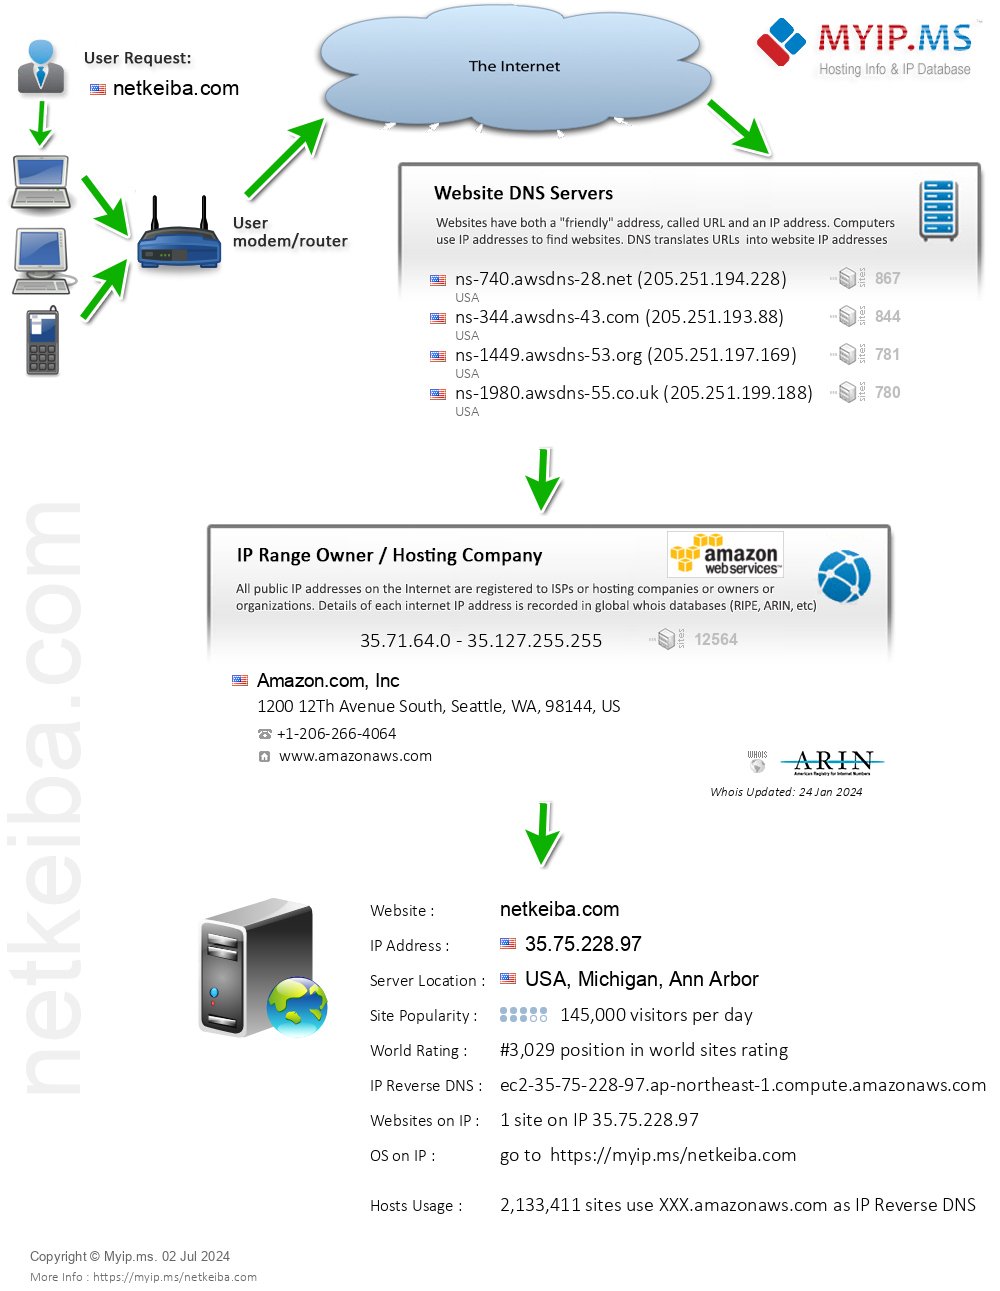 Netkeiba.com - Website Hosting Visual IP Diagram